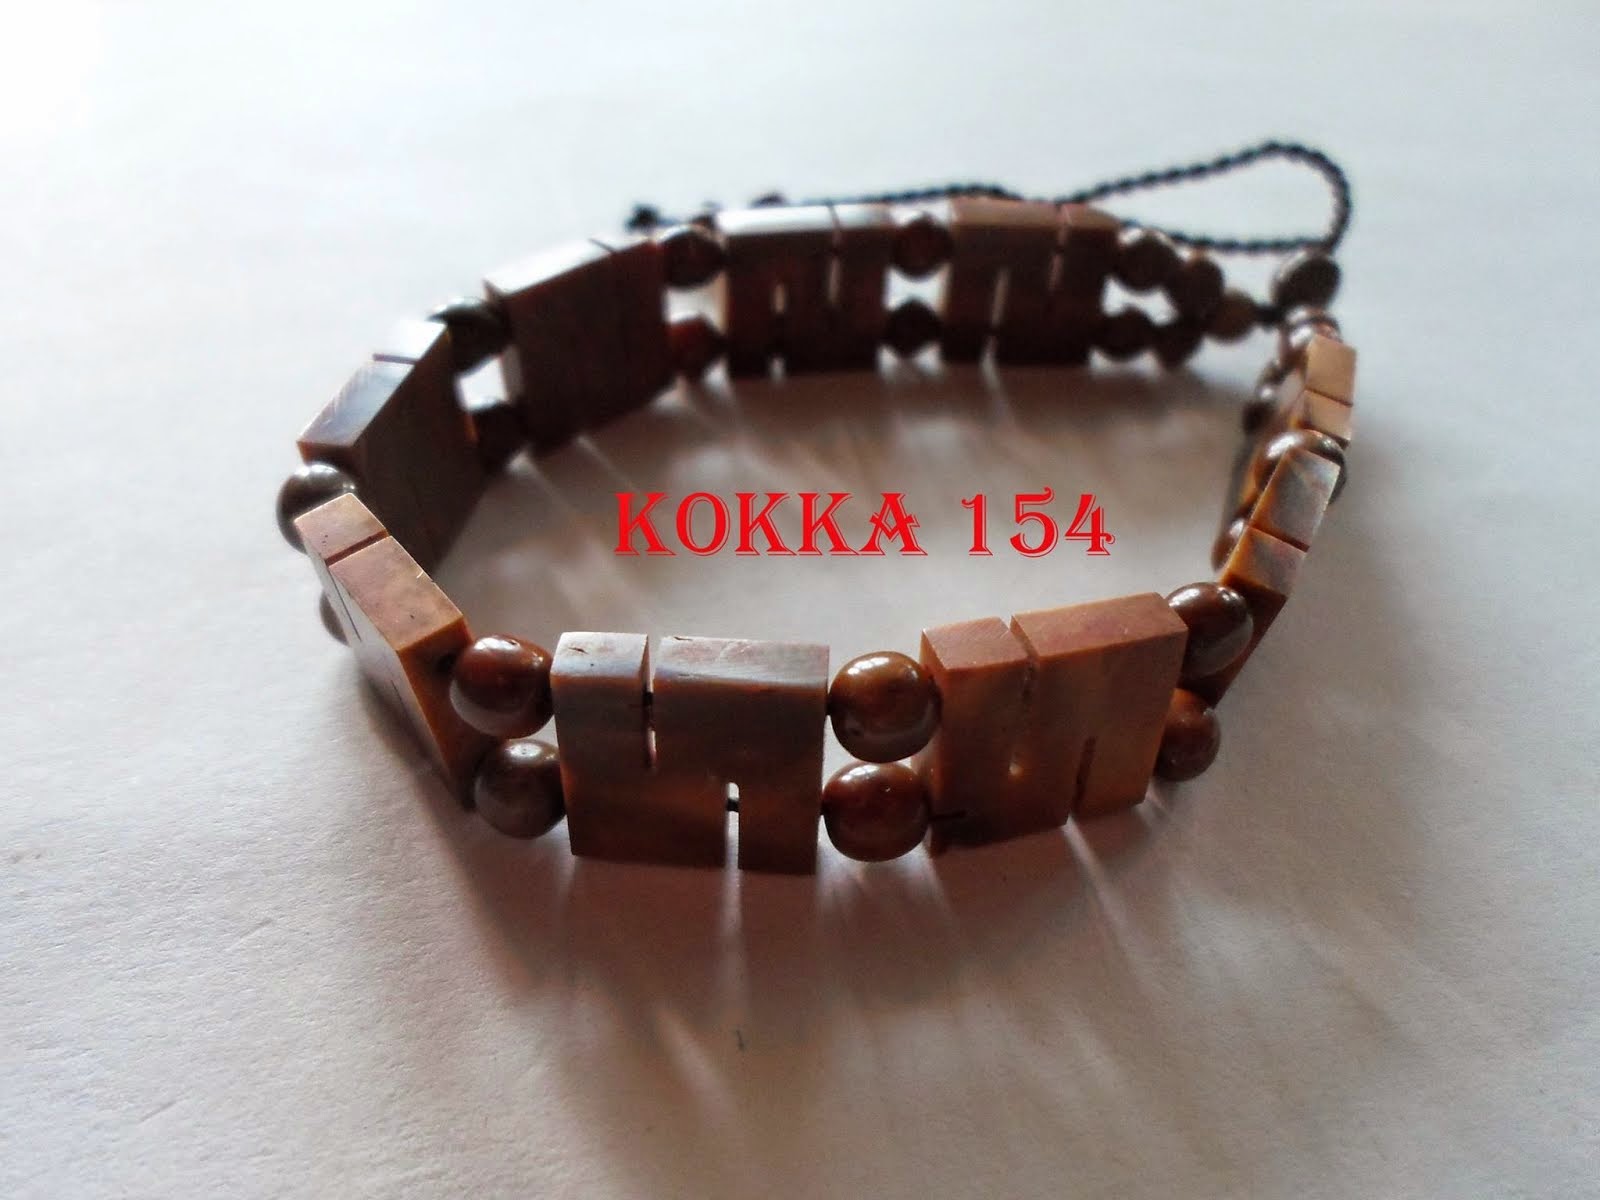 KOKKA 154